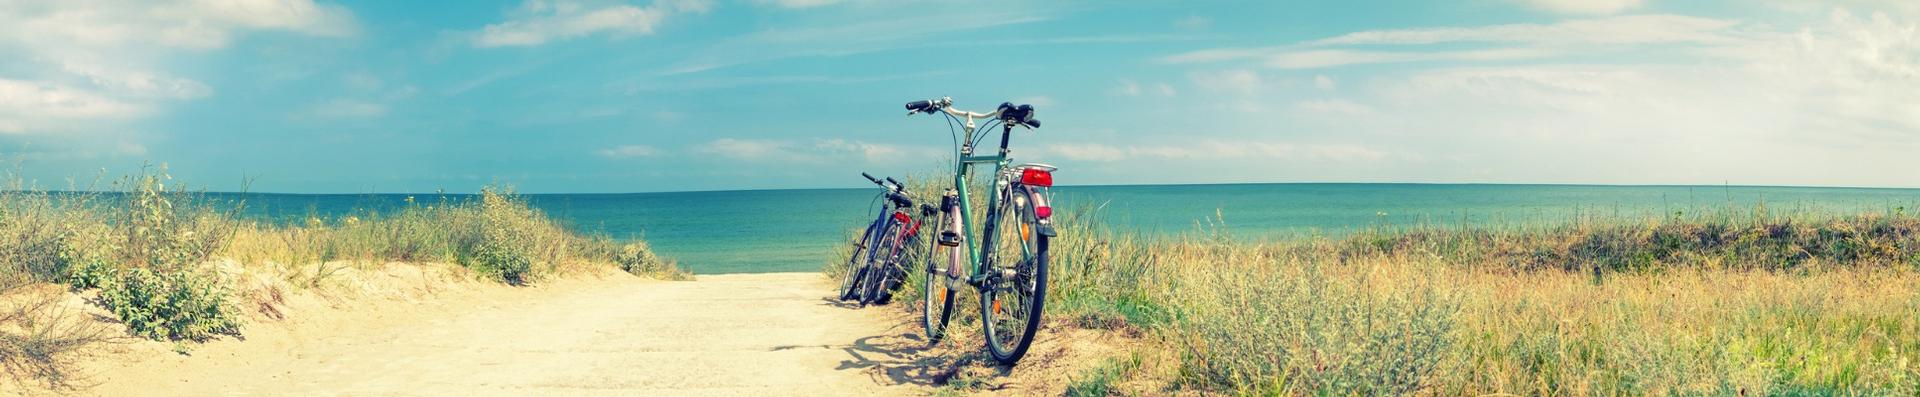 bikes at beach